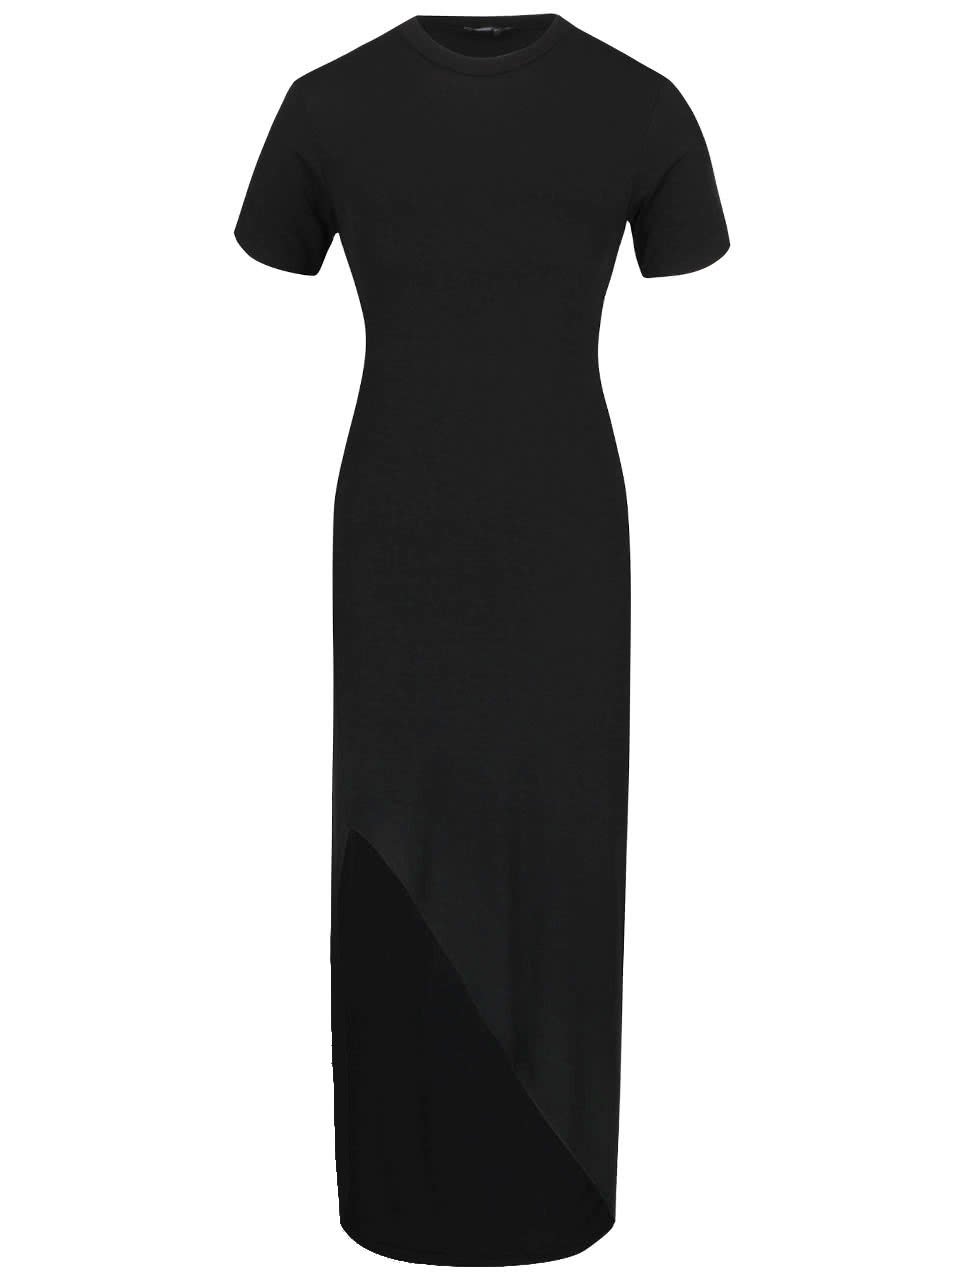 Černé dlouhé asymetrické šaty s krátkým rukávem ZOOT